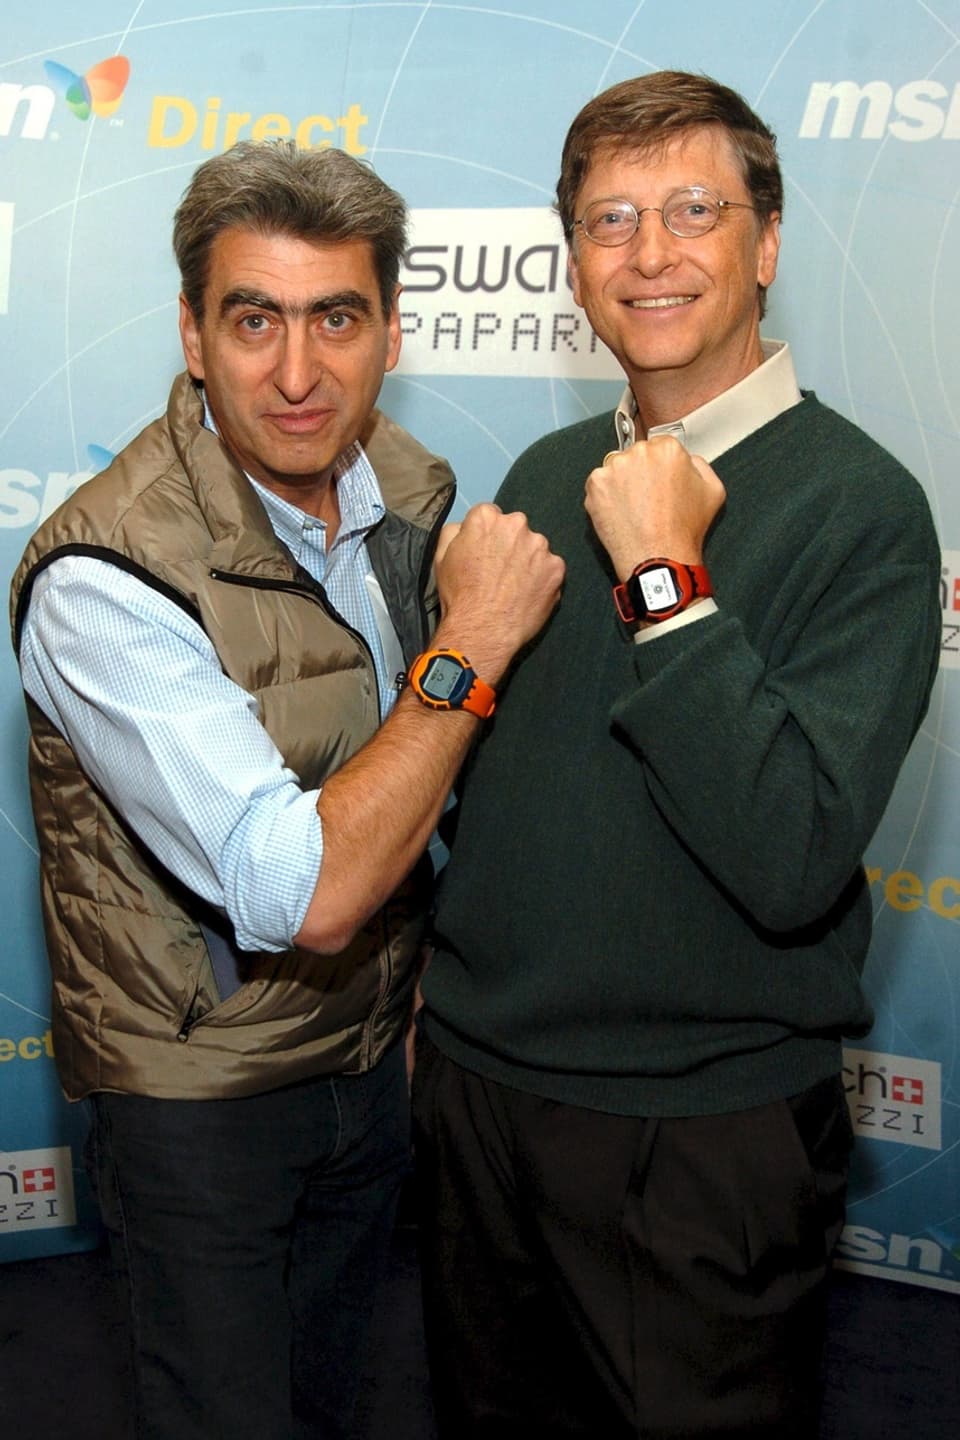 Nick Hayek (links) und Bill Gates posieren mit der Paparazzi Swatch